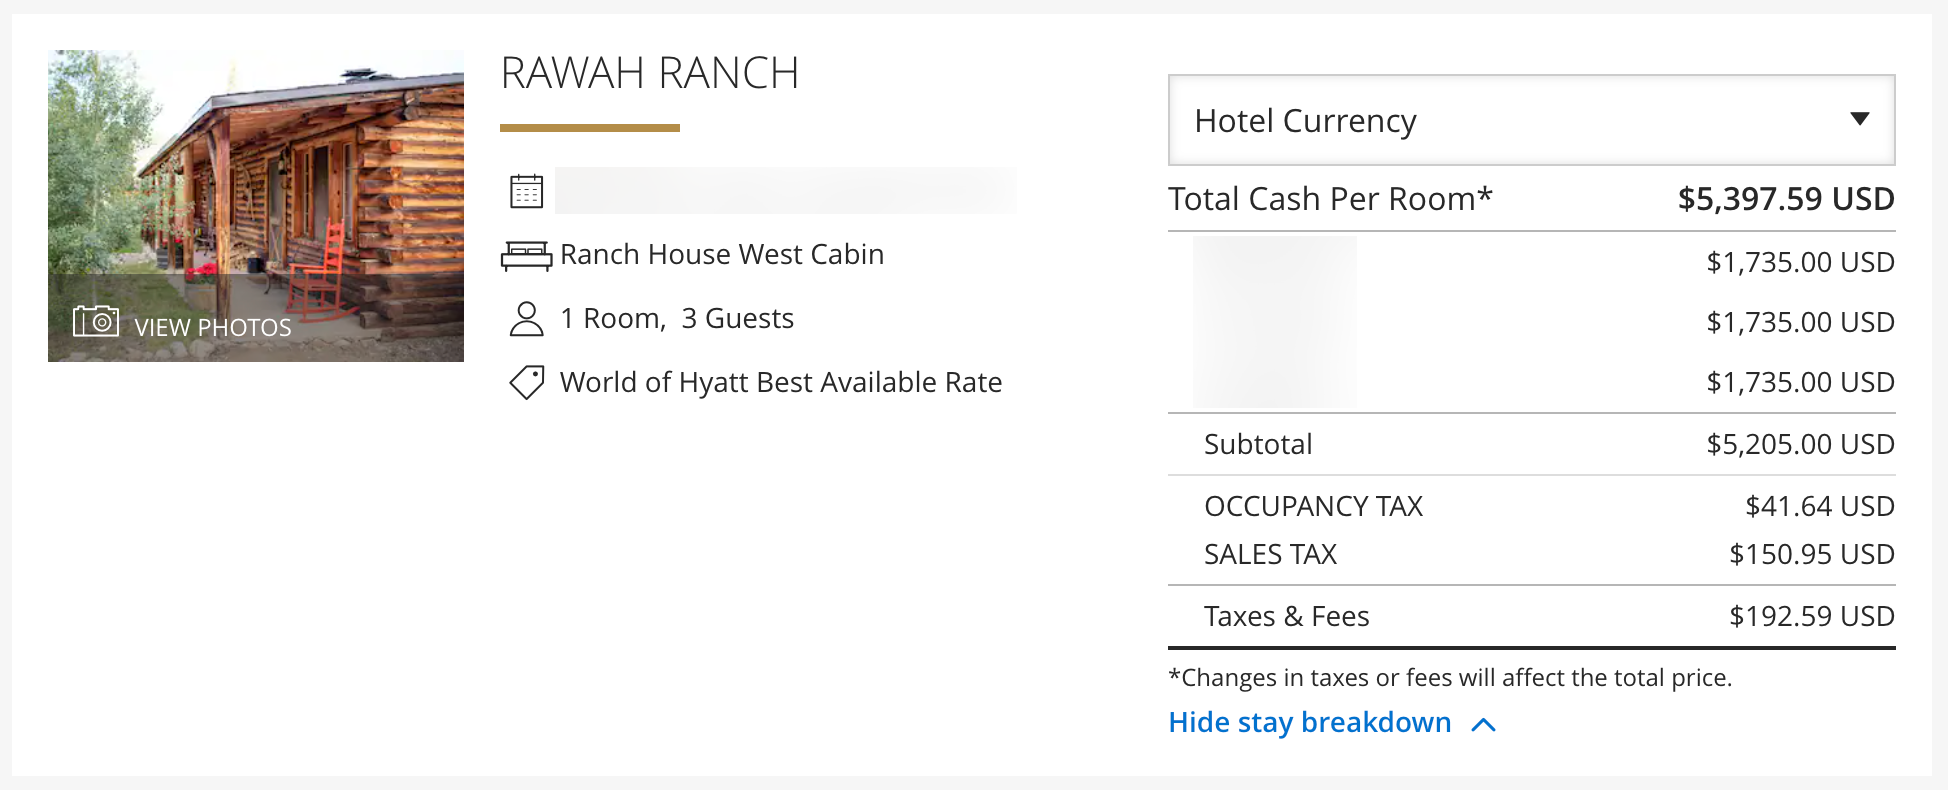 Paid rates at Rawah Ranch through World of Hyatt